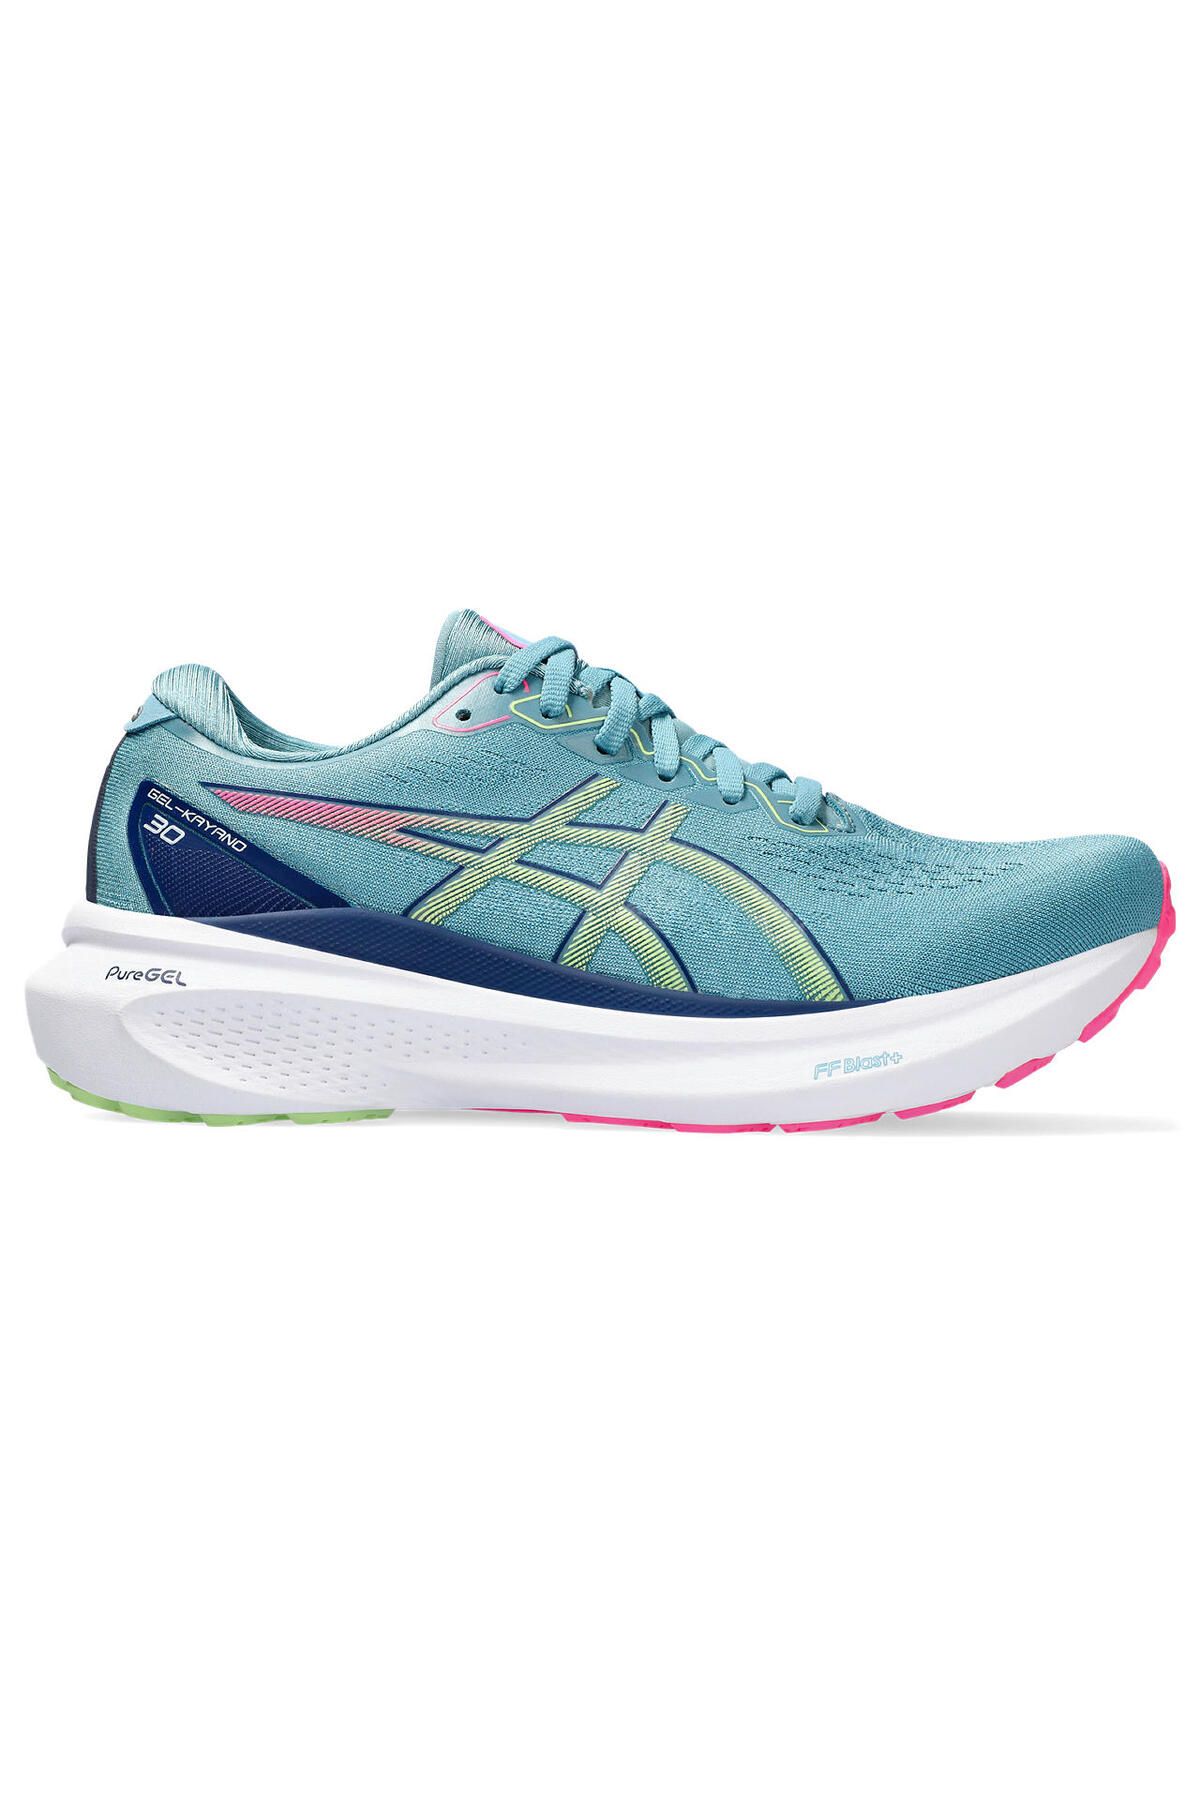 Asics Gel-Kayano 30 Kadın Yeşil Koşu Ayakkabısı 1012B357-402